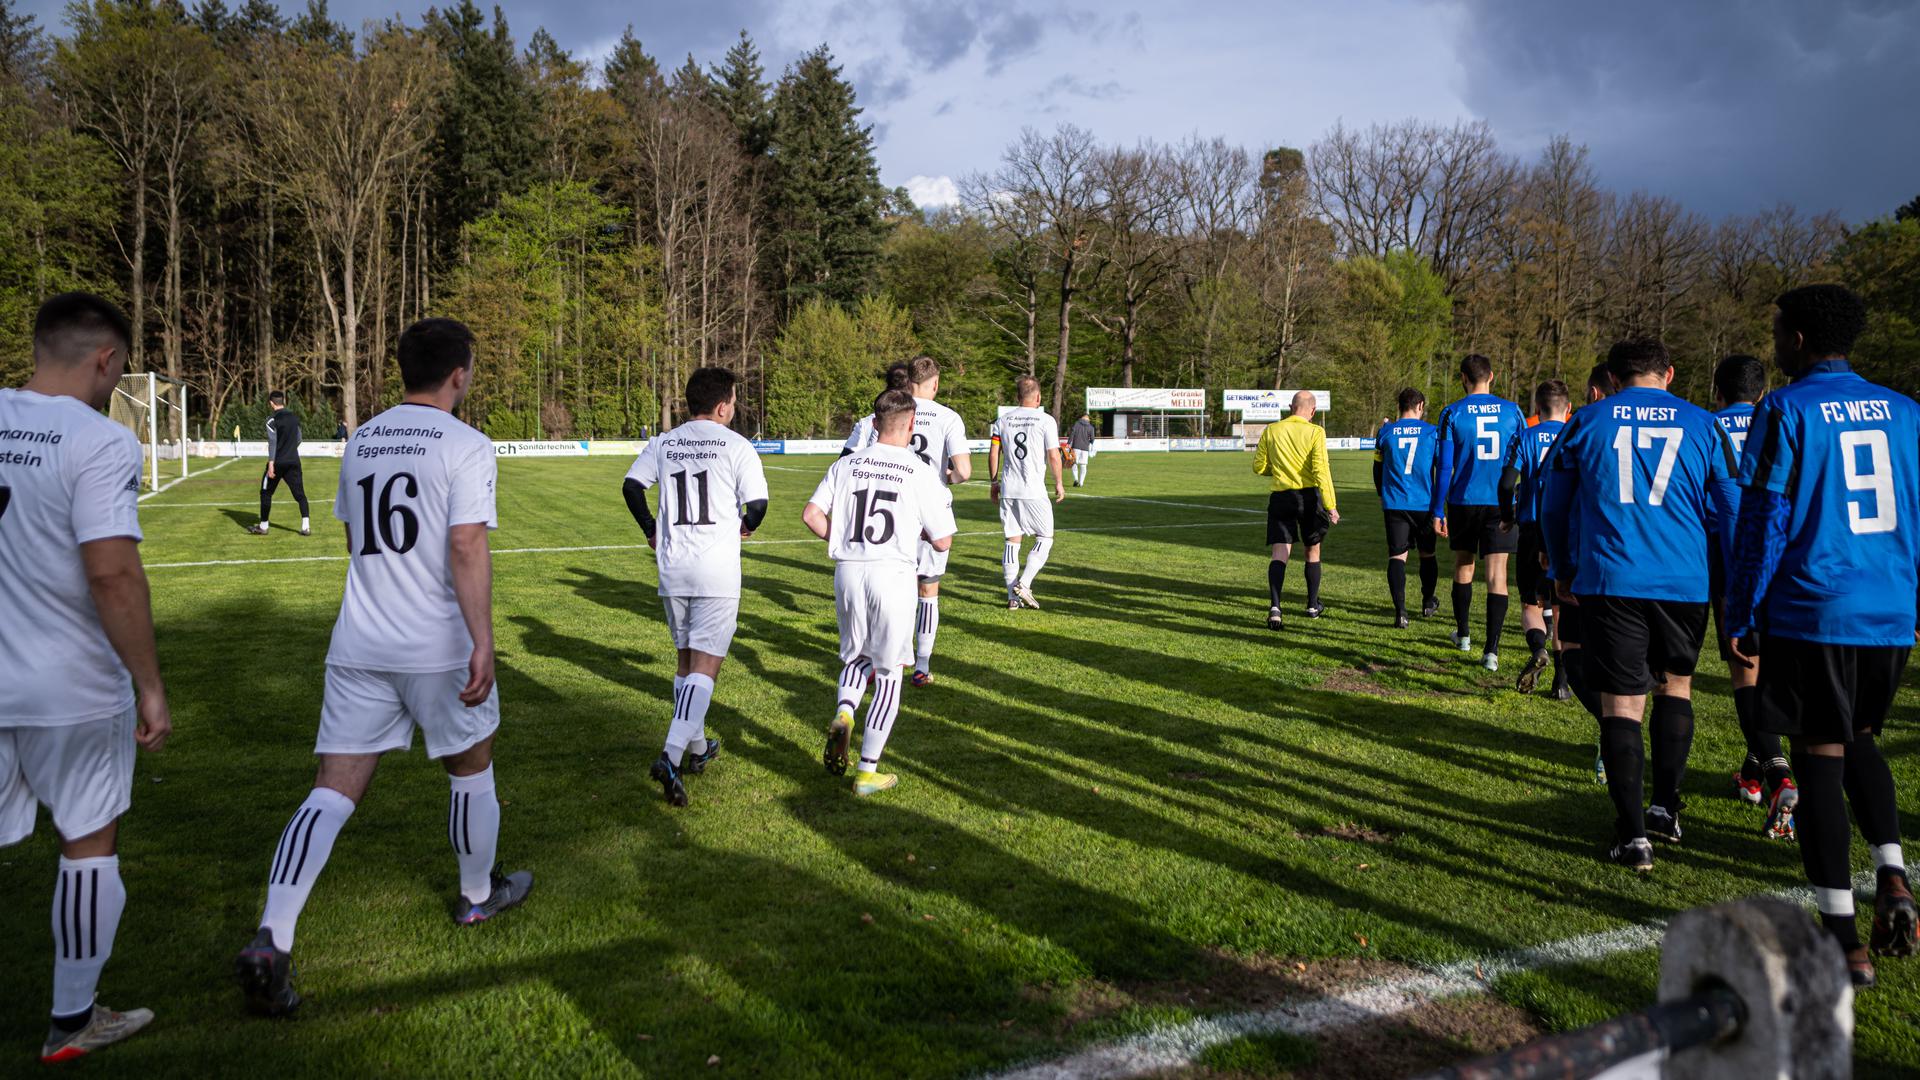 Die Fußballmannschaften des FC Eggenstein und des FC West laufen vor dem Spielbeginn auf das Spielfeld.